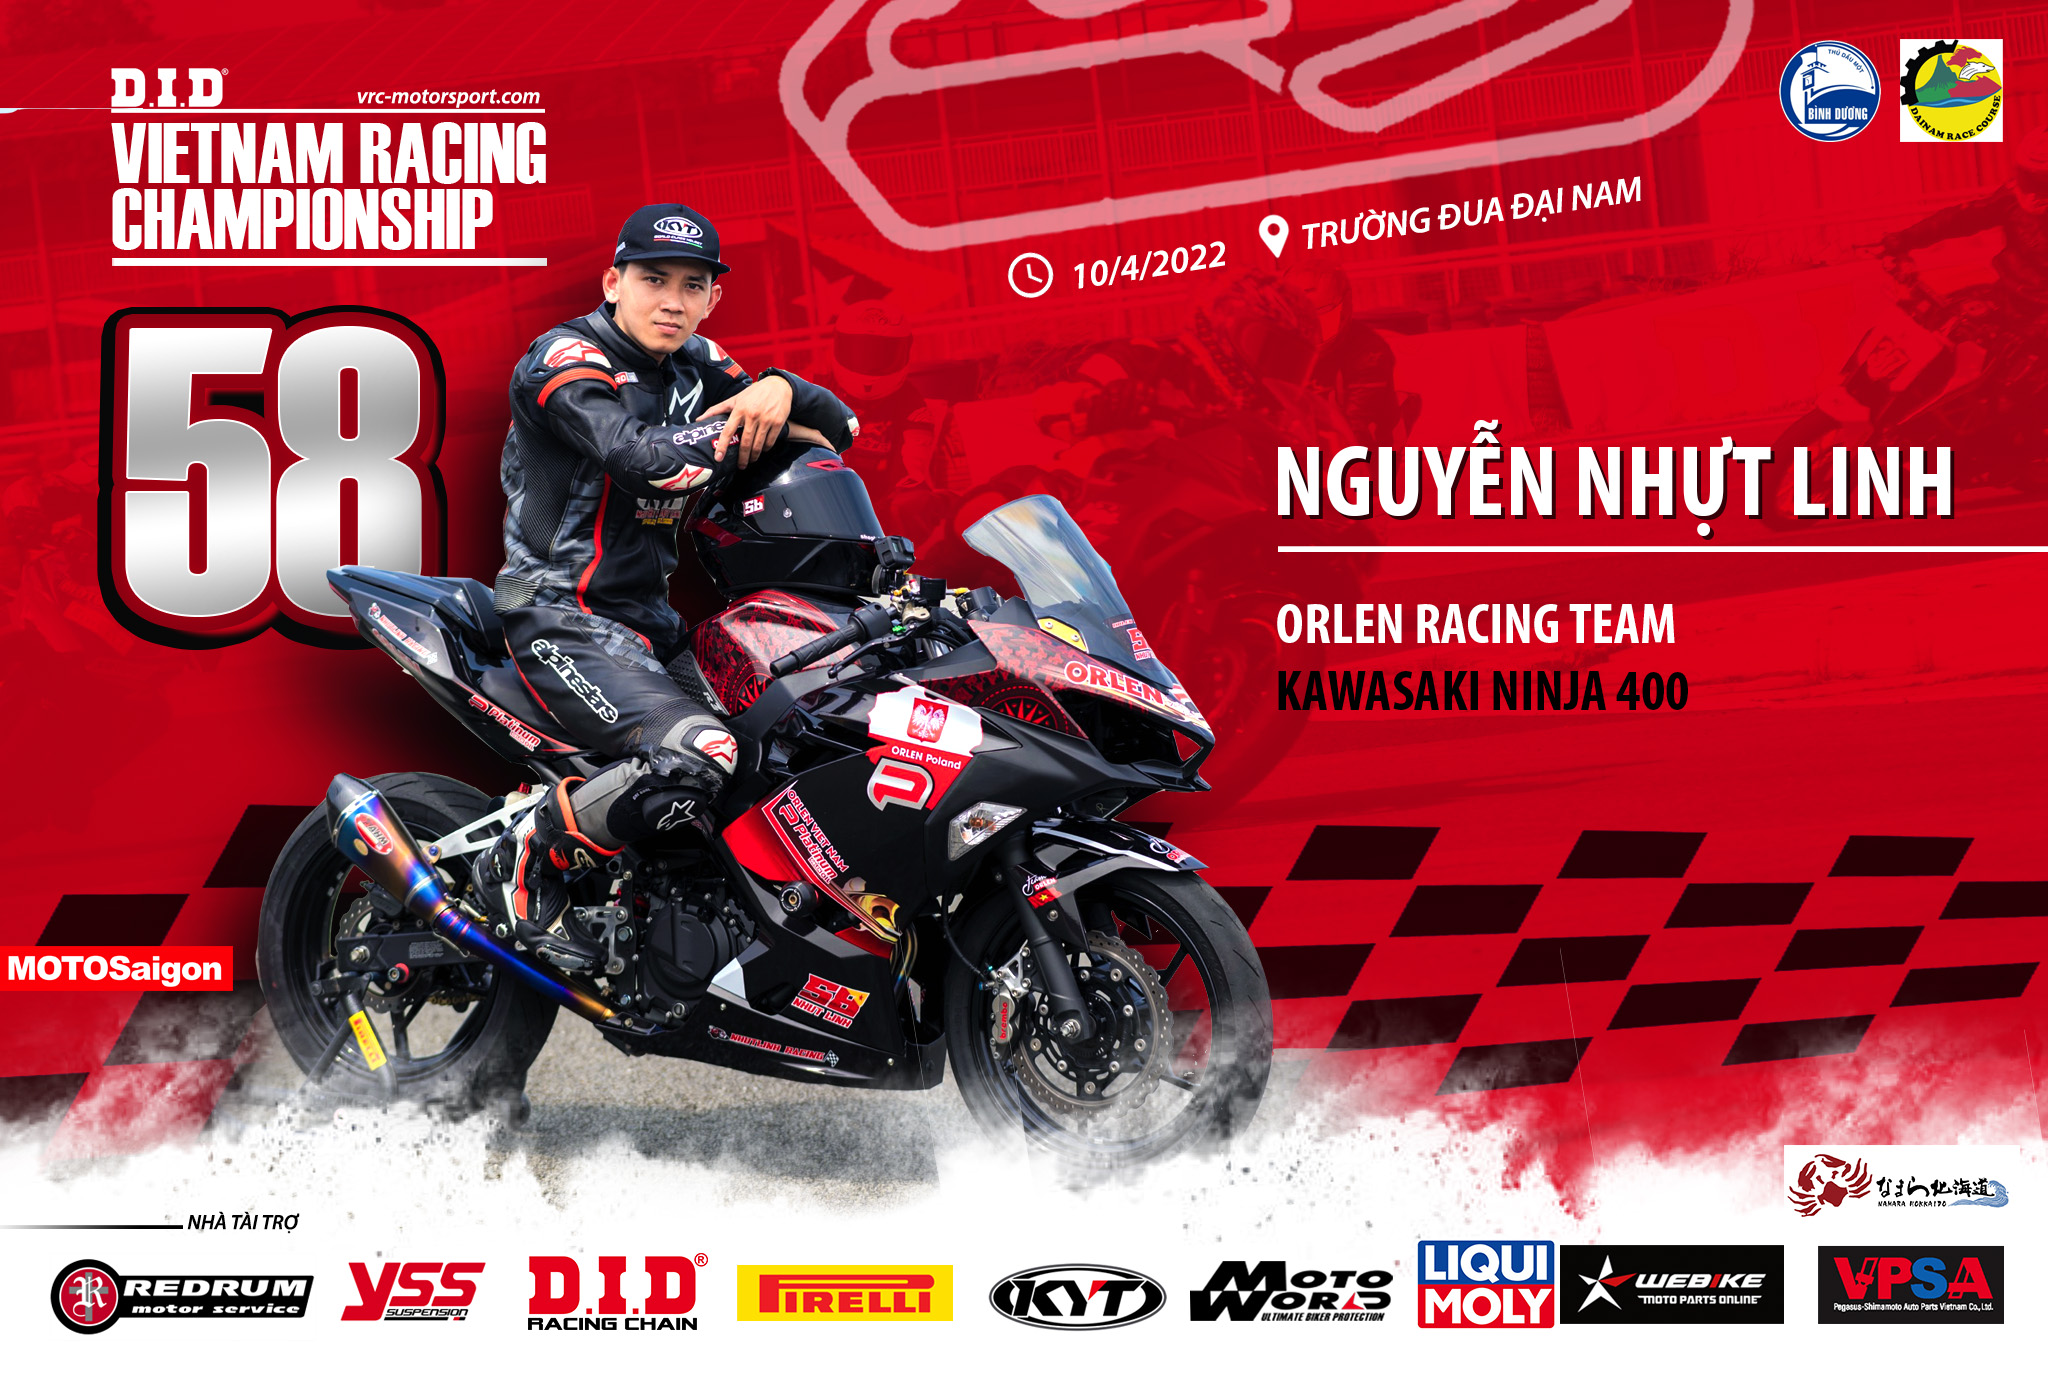 Tay đua Nguyễn Nhựt Linh số 58 của đội đua Orlen Racing Team tham gia giải đua xe mô tô phân khối lớn VRC 2022 với xe đua Kawasaki Ninja 400